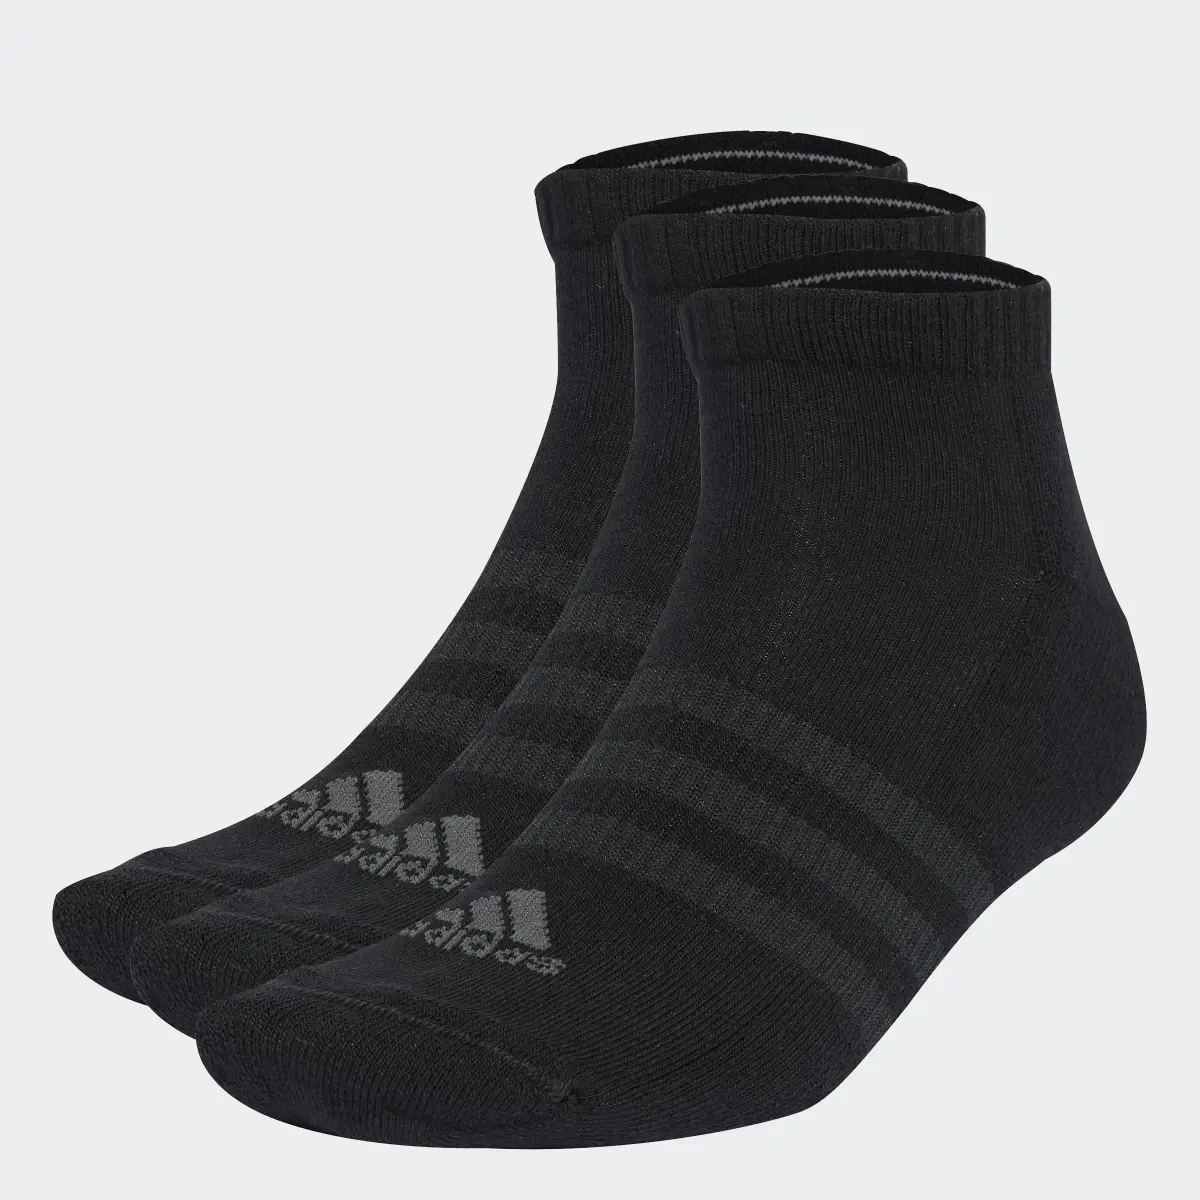 Adidas Cushioned Low-Cut Socken, 3 Paar. 1